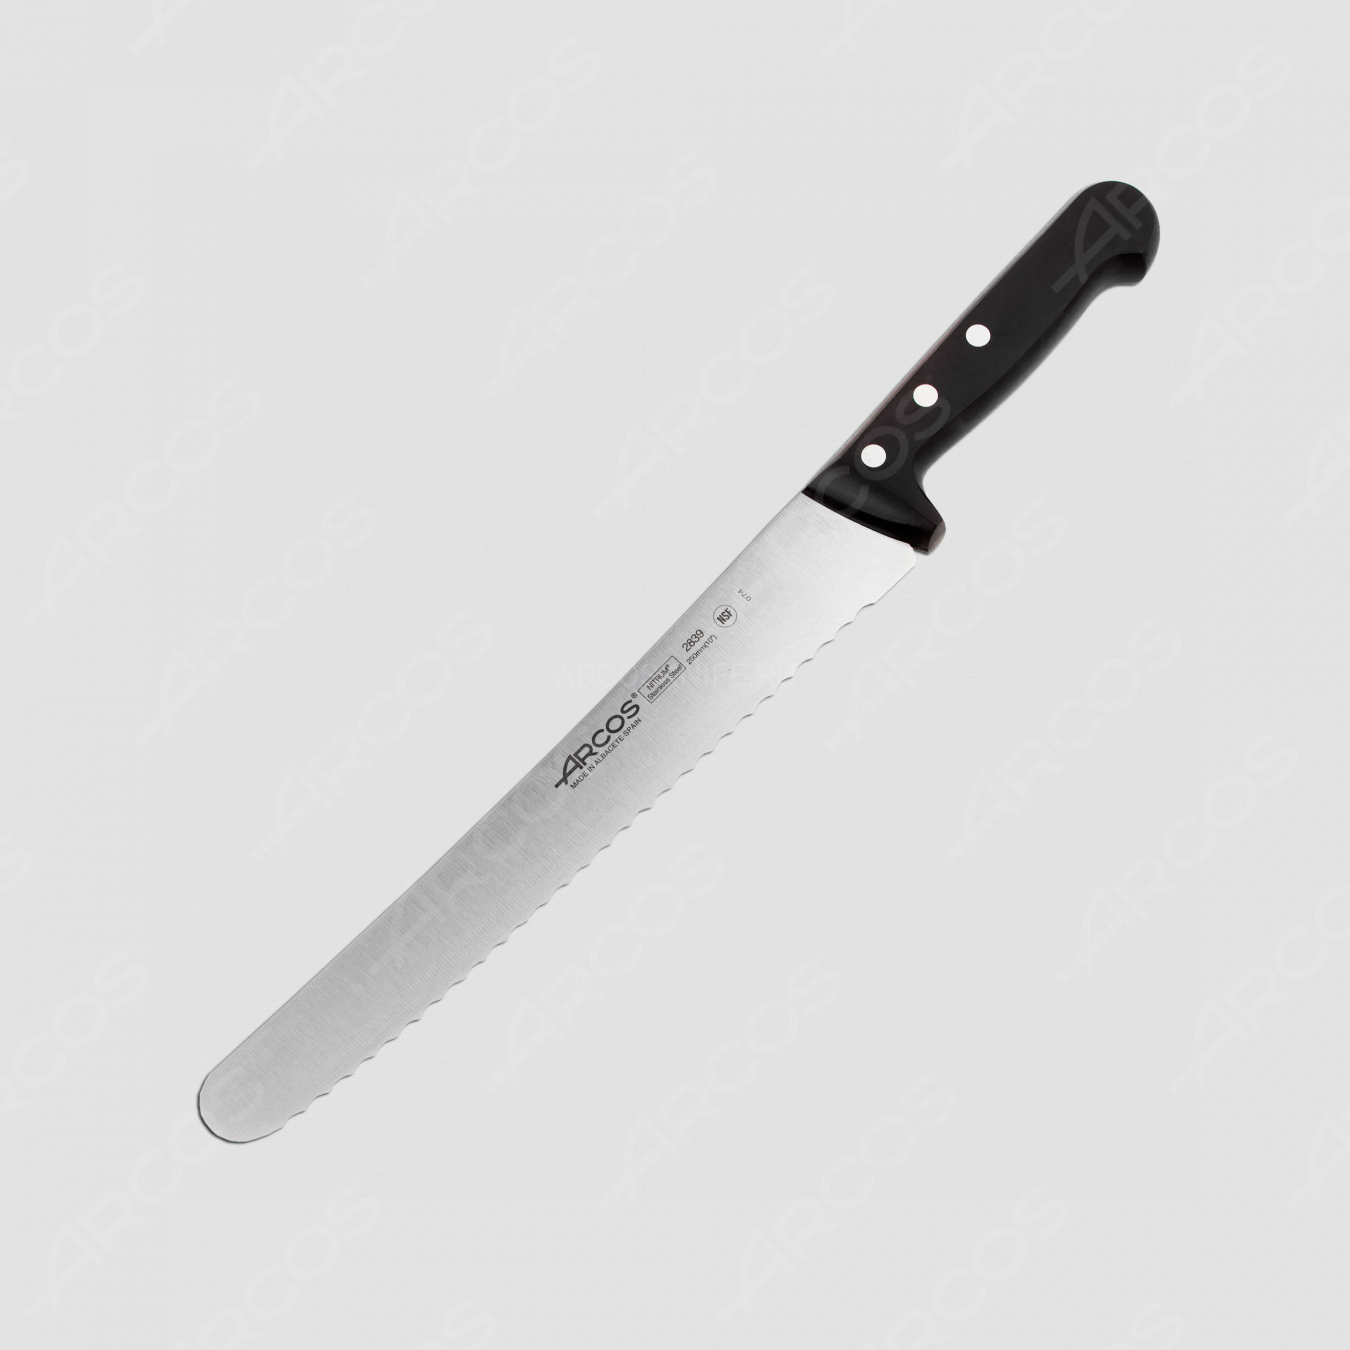 Нож кухонный для кондитерских изделий 25 см, серия Universal, ARCOS, Испания